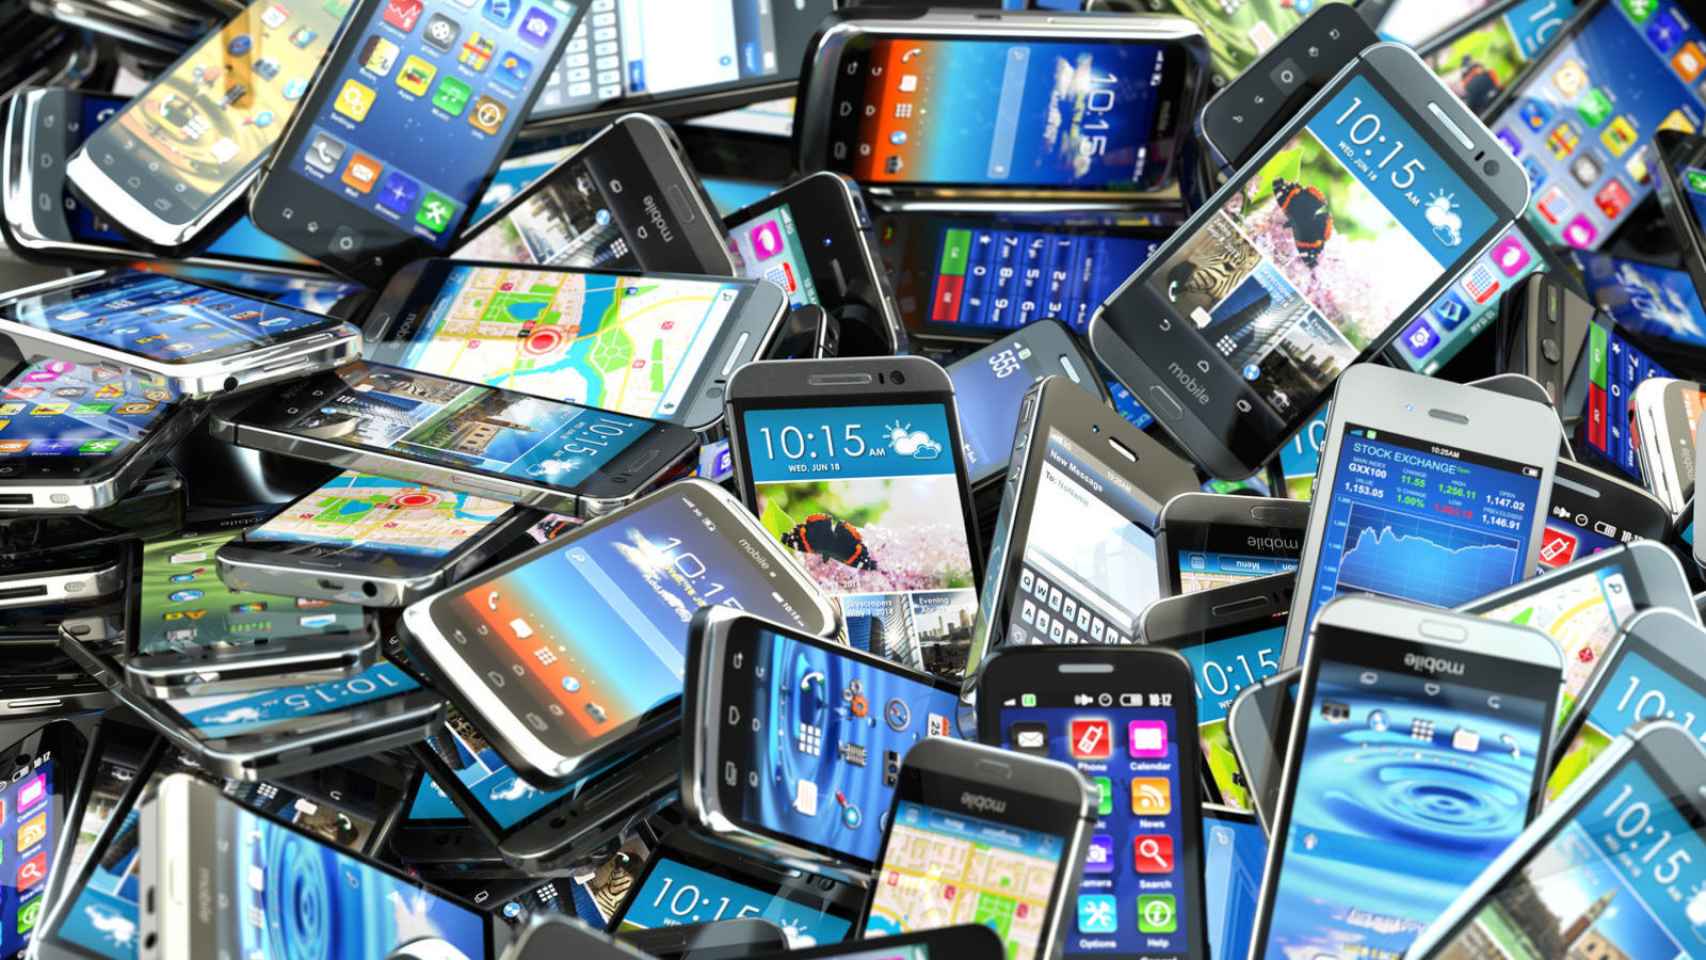 Comprar móviles de segunda mano, ¿merece la pena? - El Blog de Estrena Móvil  Barato